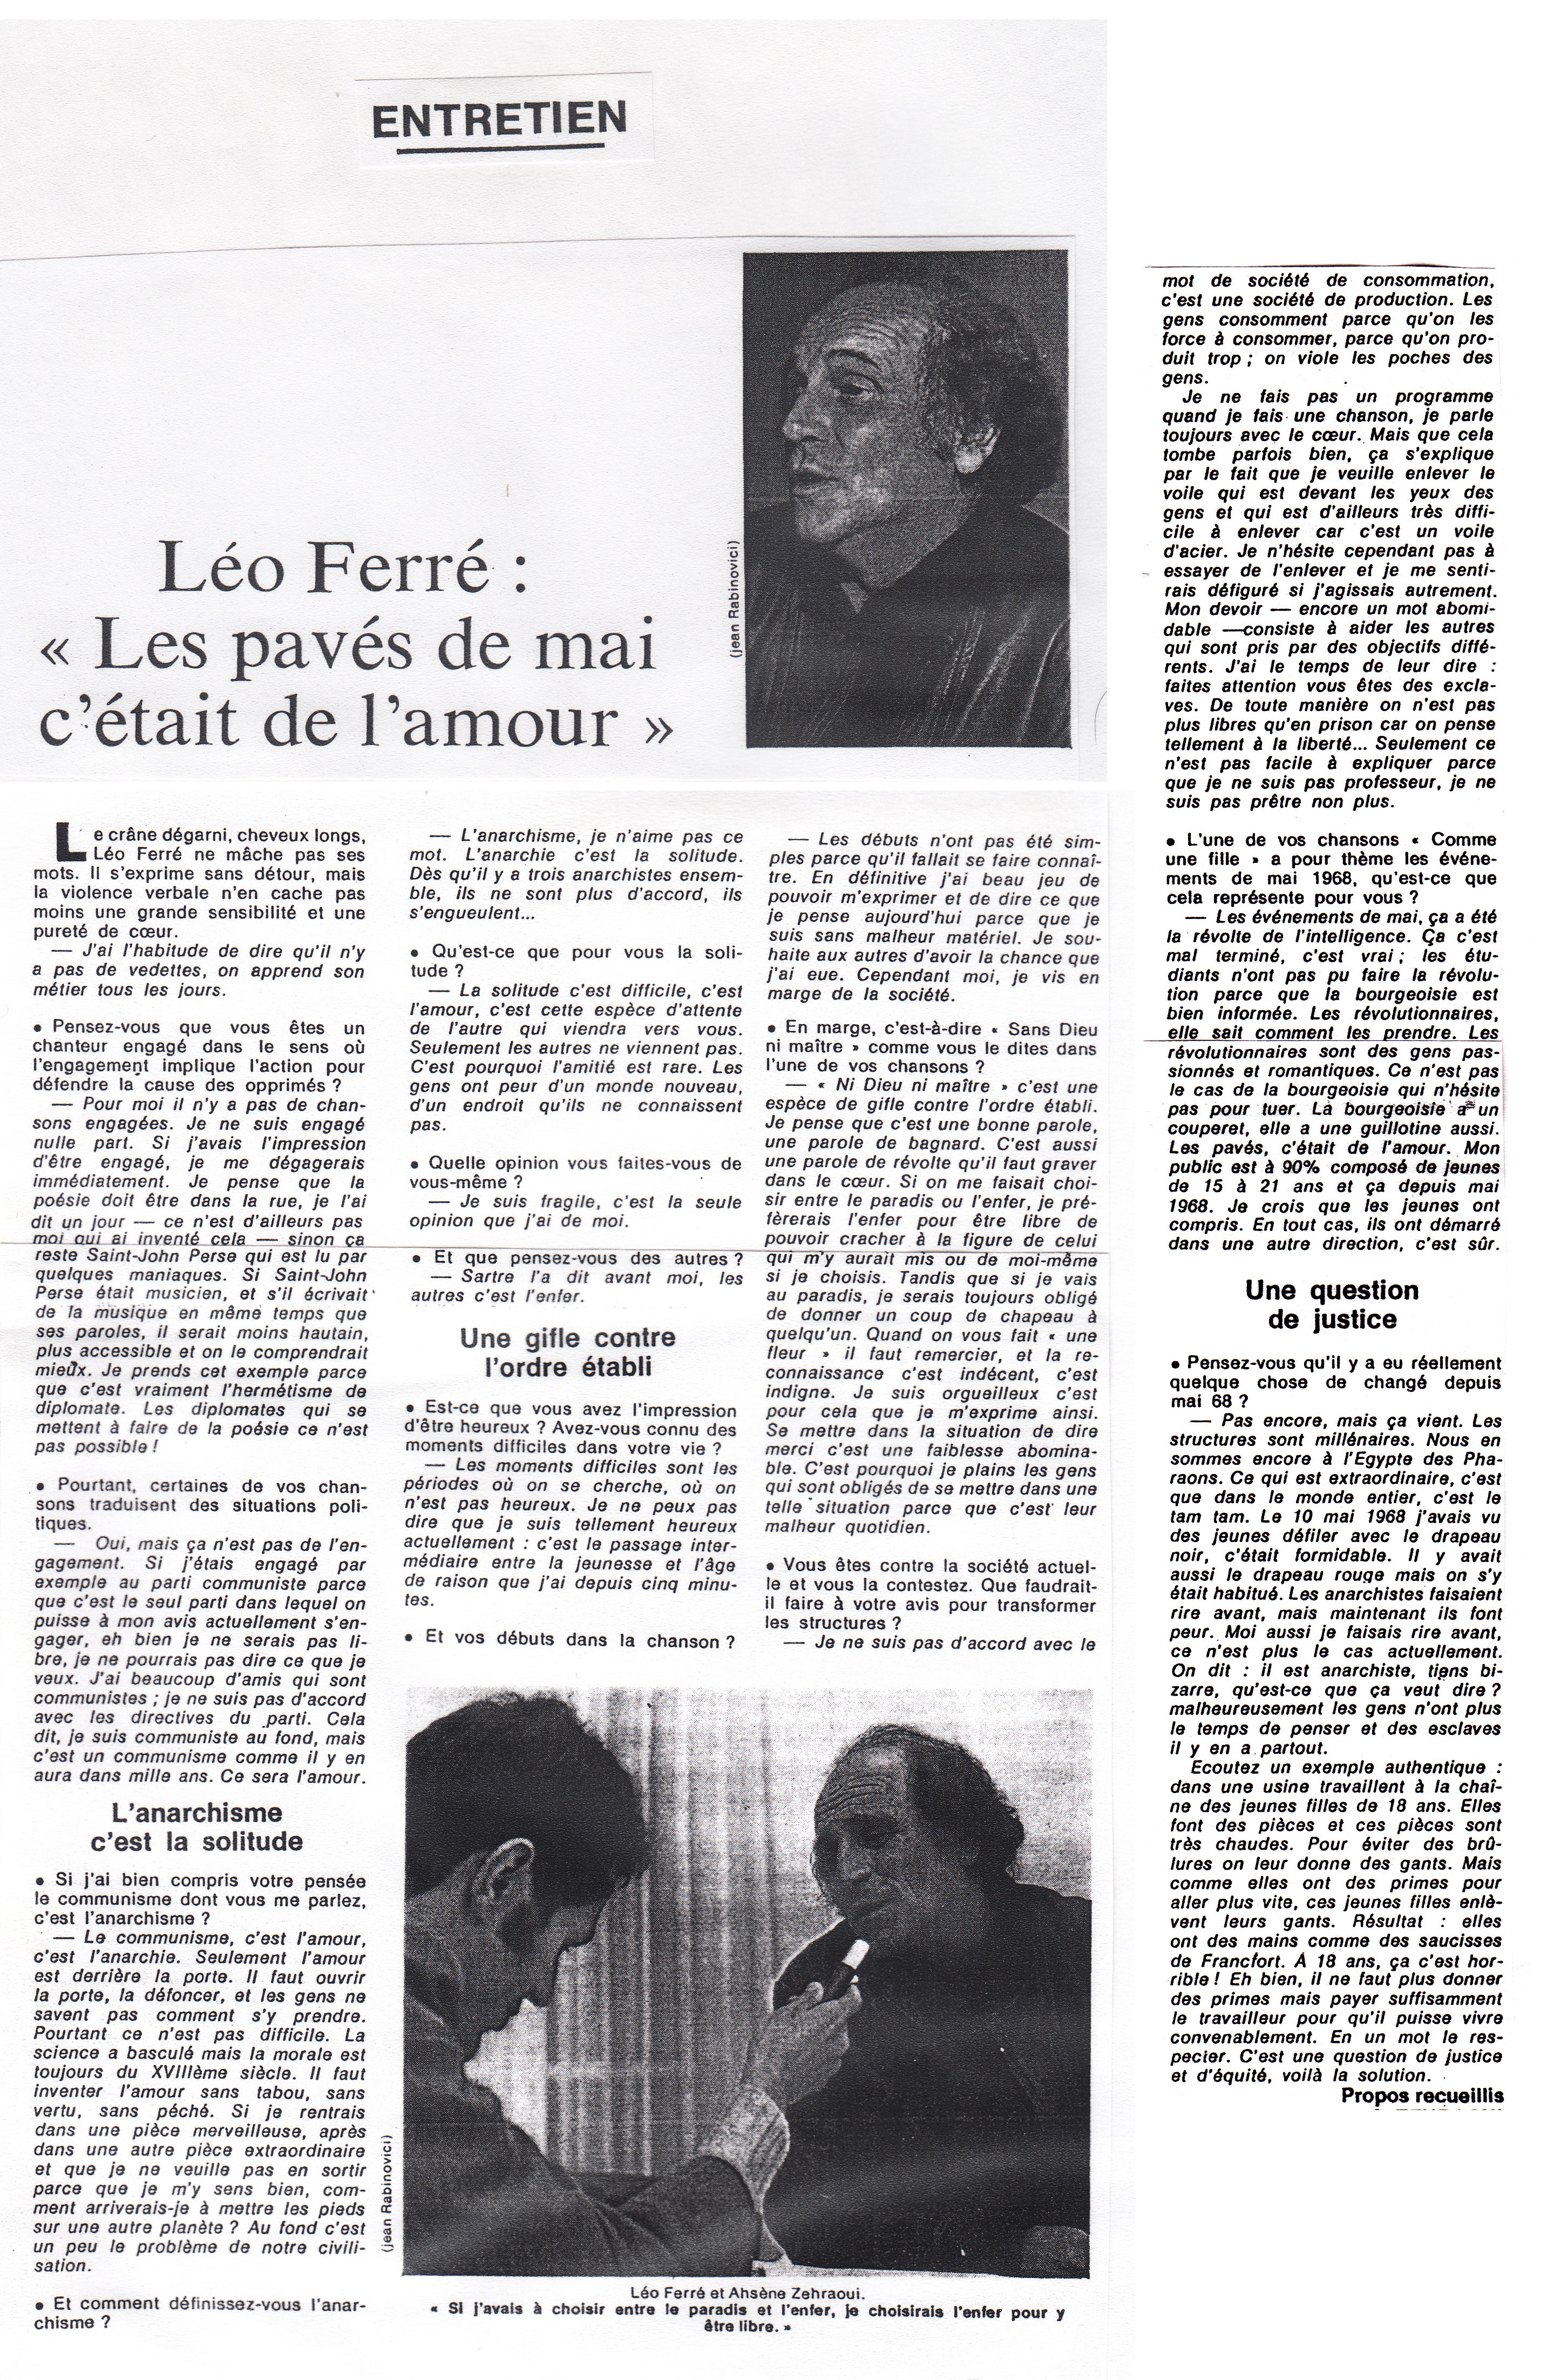 Léo Ferré - Témoignage chrétien du 27 février 1970